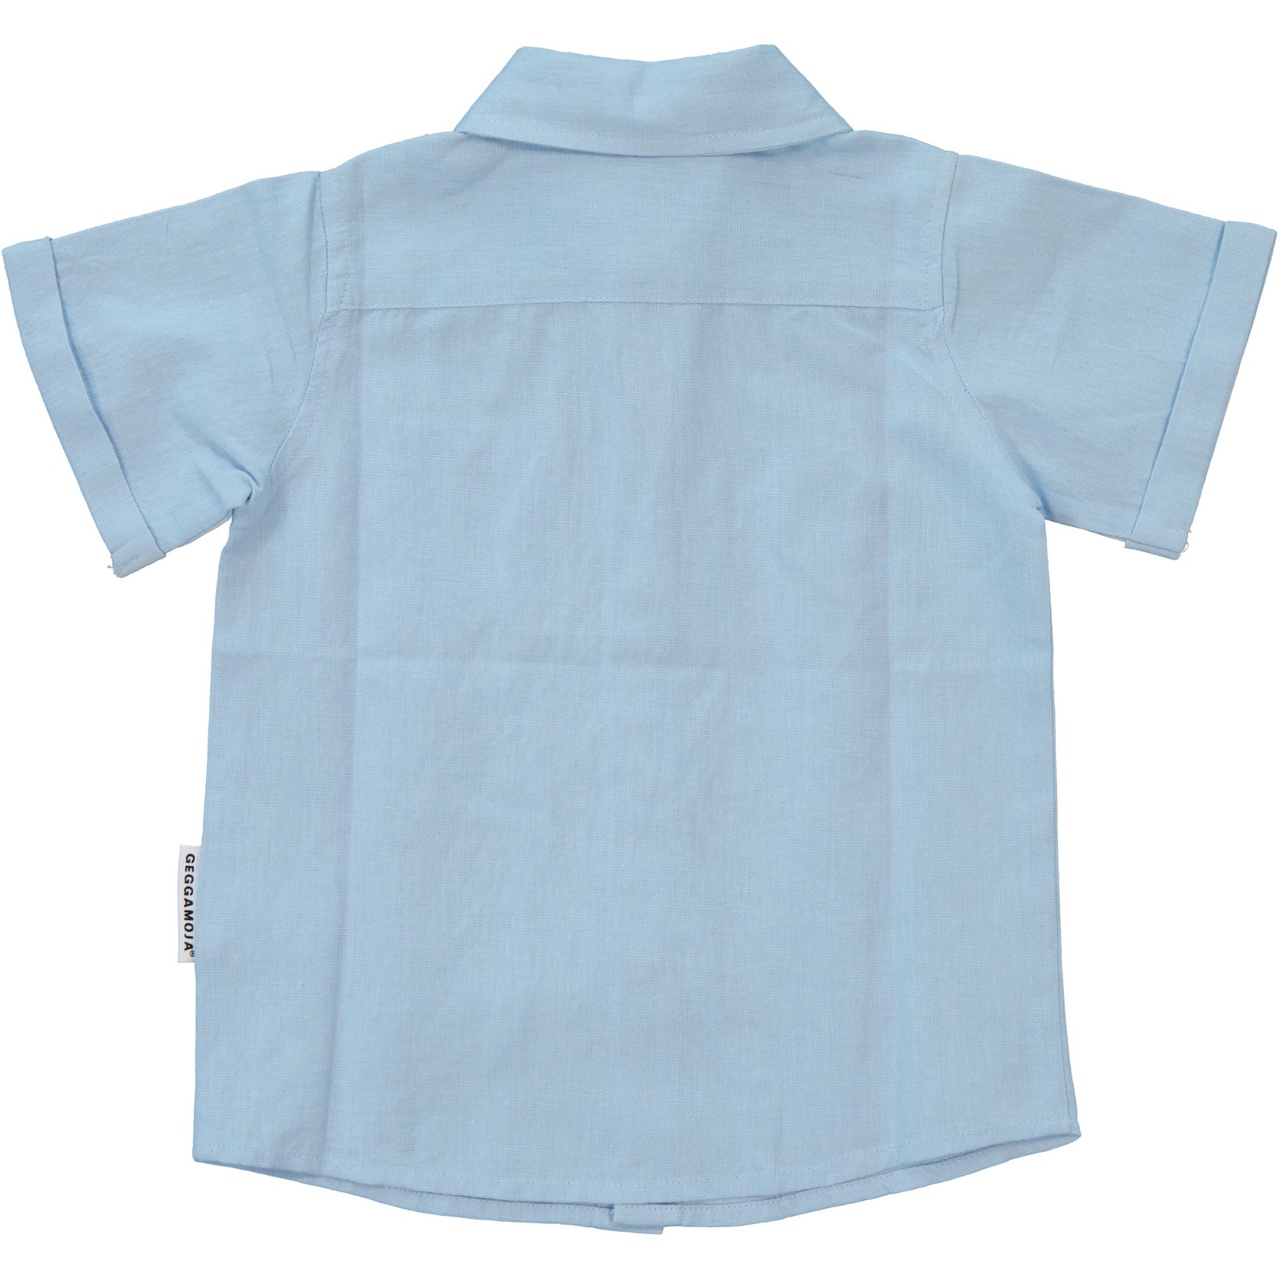 Linnen Shirt S.S Light blue 110/116